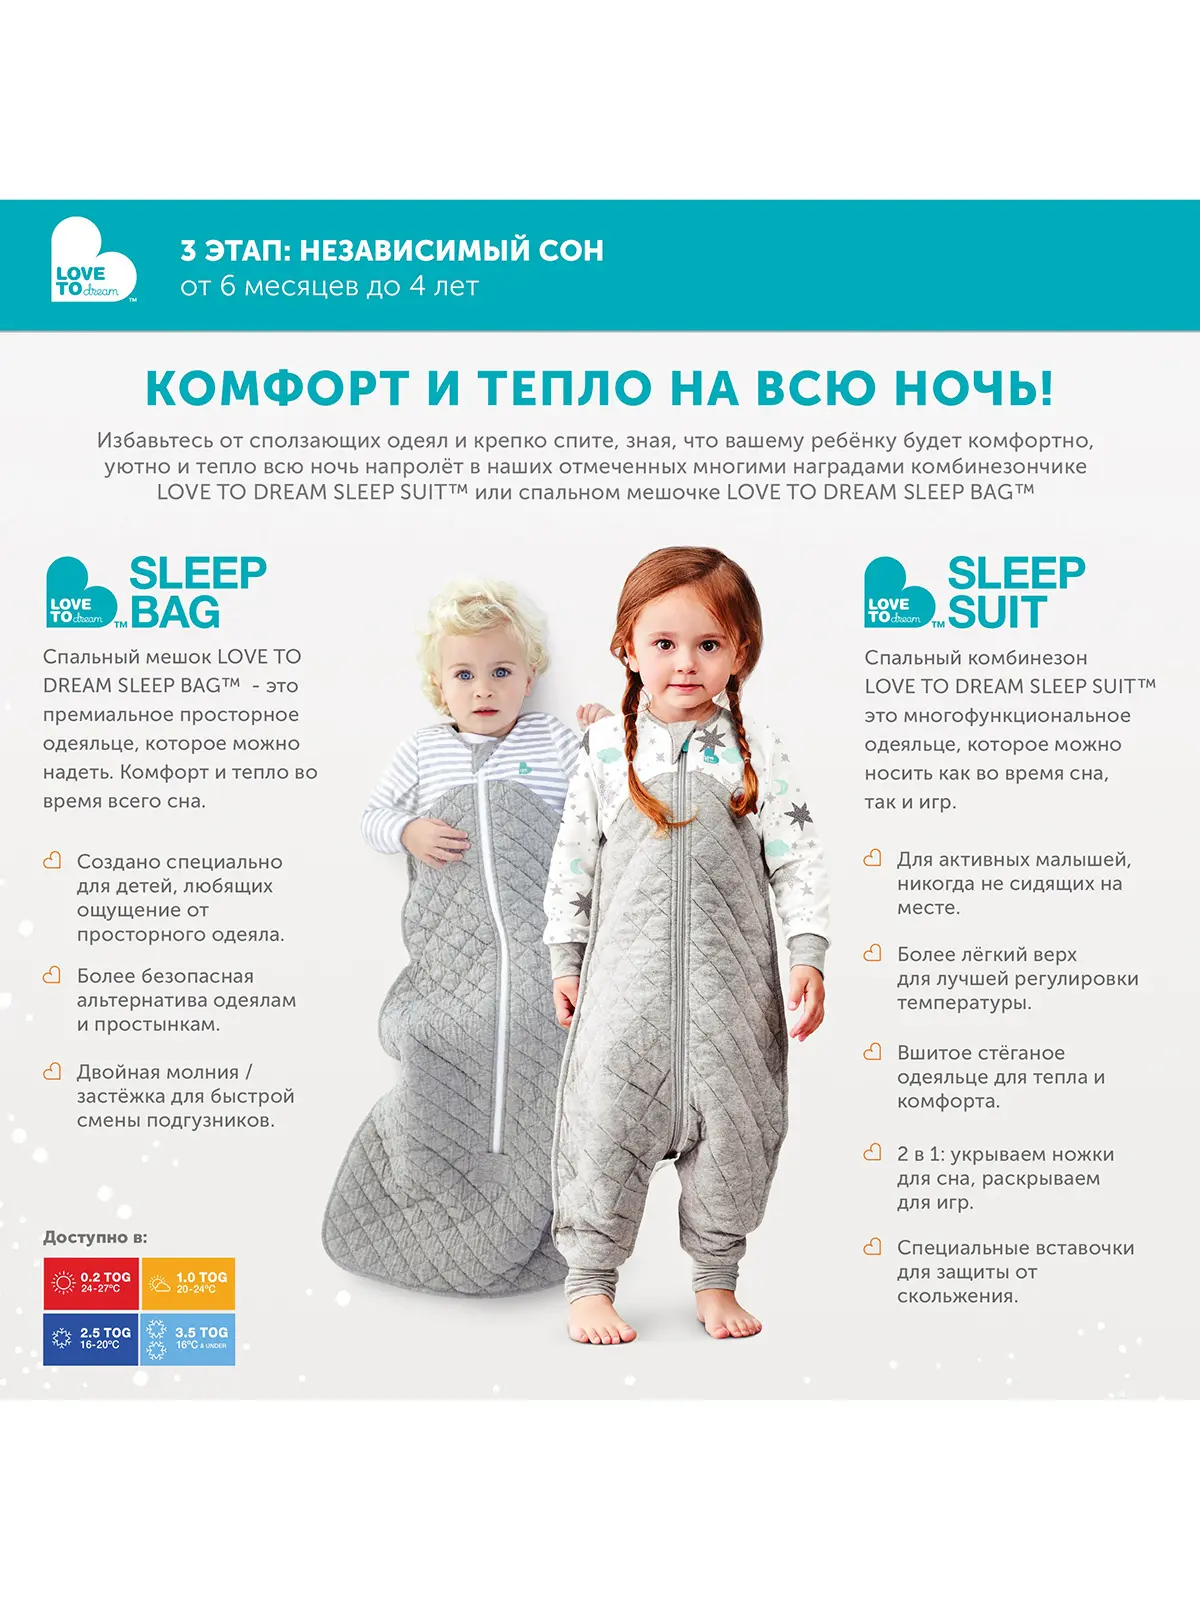 Спальный костюм Sleep Suit 0.2 TOG (6-12 мес.) - фото